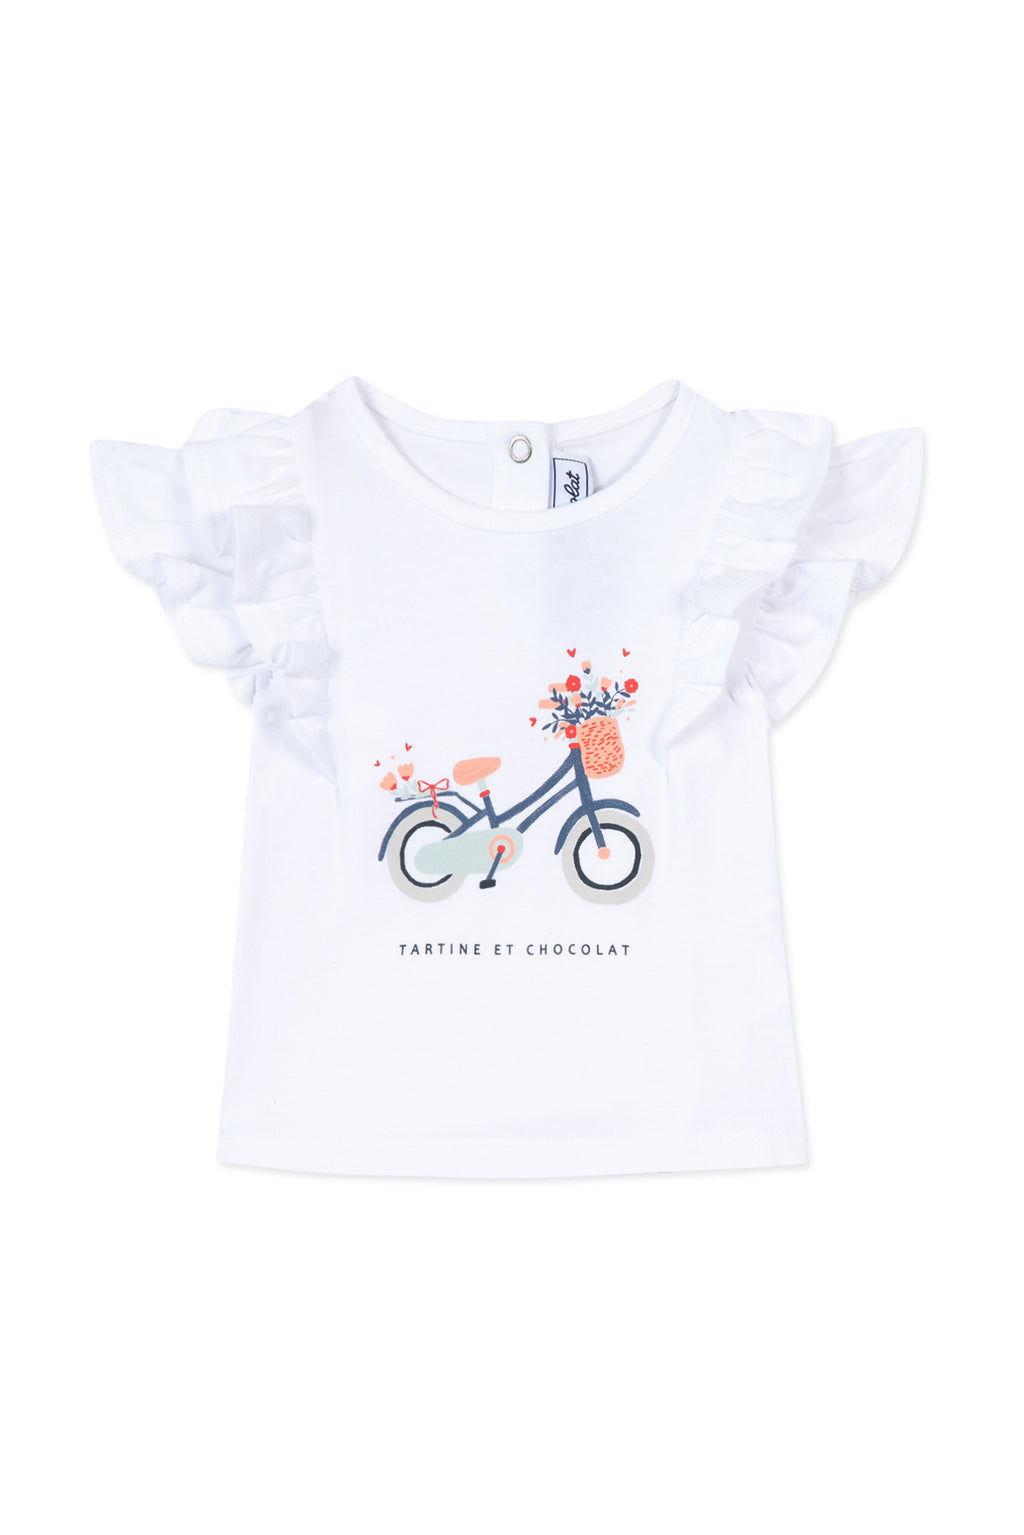 T-shirt - Pêche illustration vélo